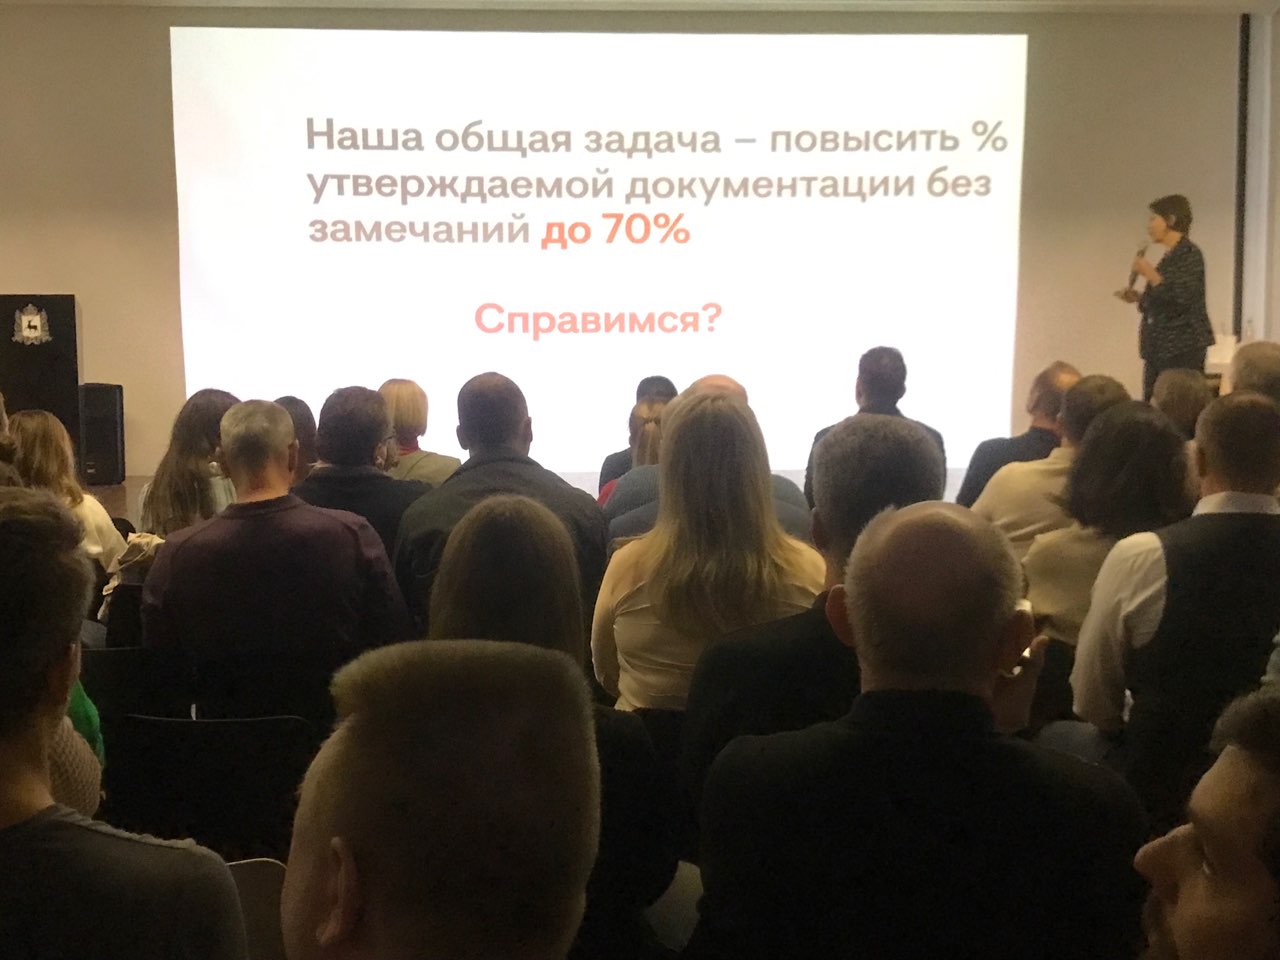 В Нижегородском регионе без замечаний принимаются только 20% строительной документации